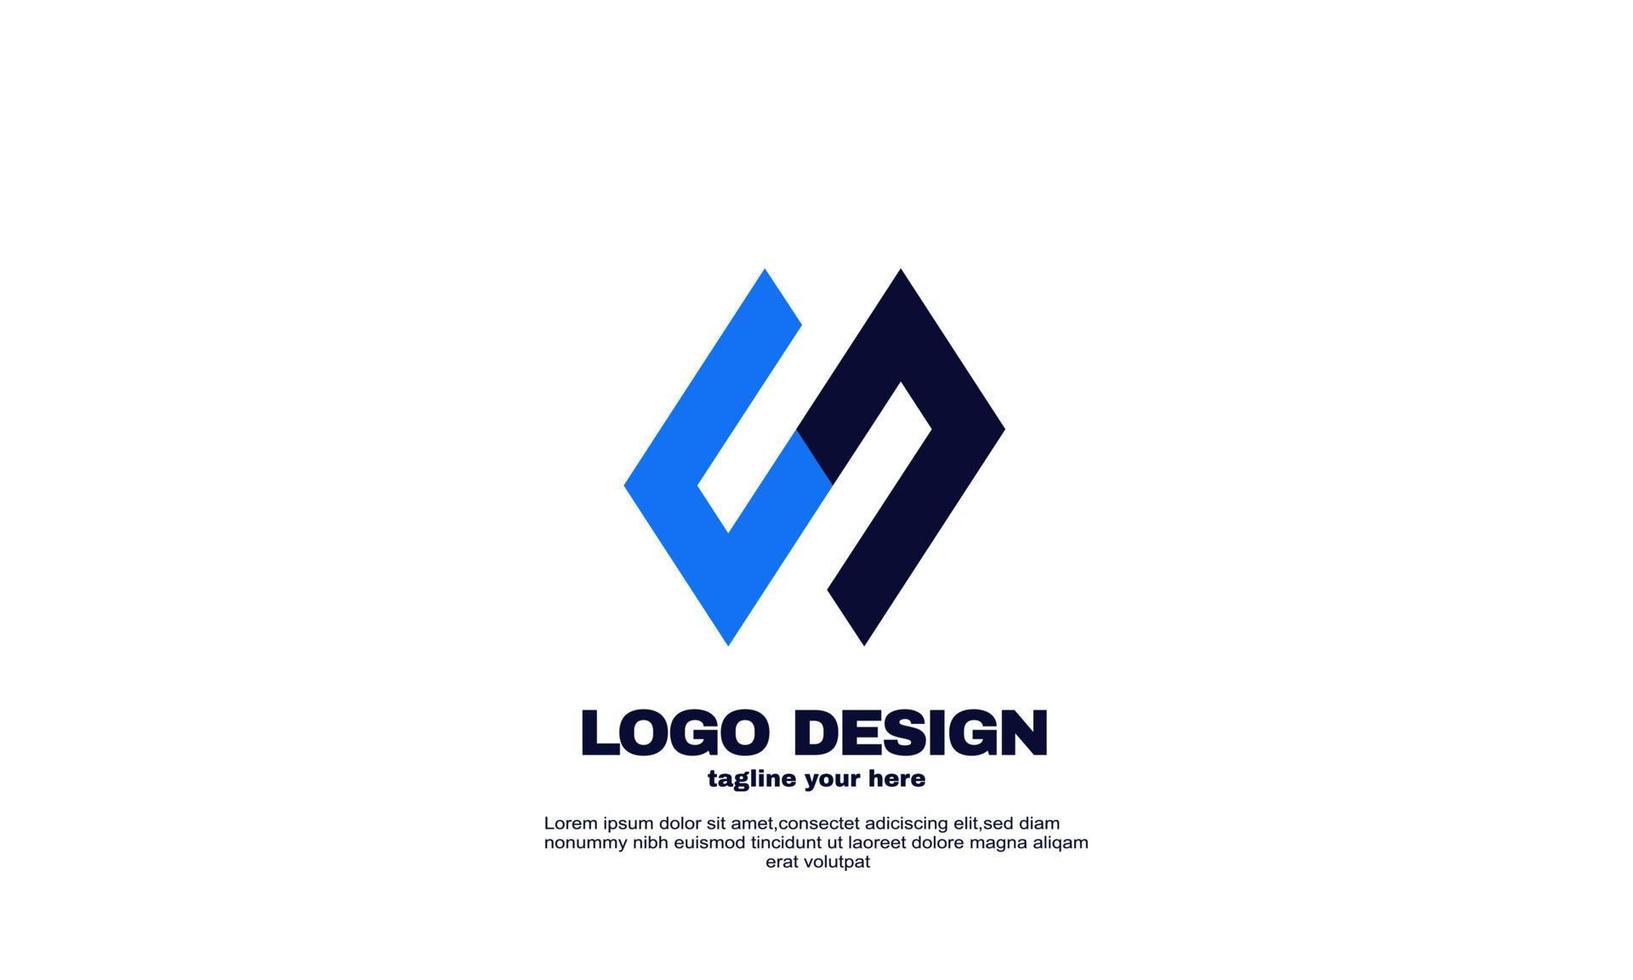 impresionante color azul marino mejor inspiración diseño de logotipo de empresa moderna vector